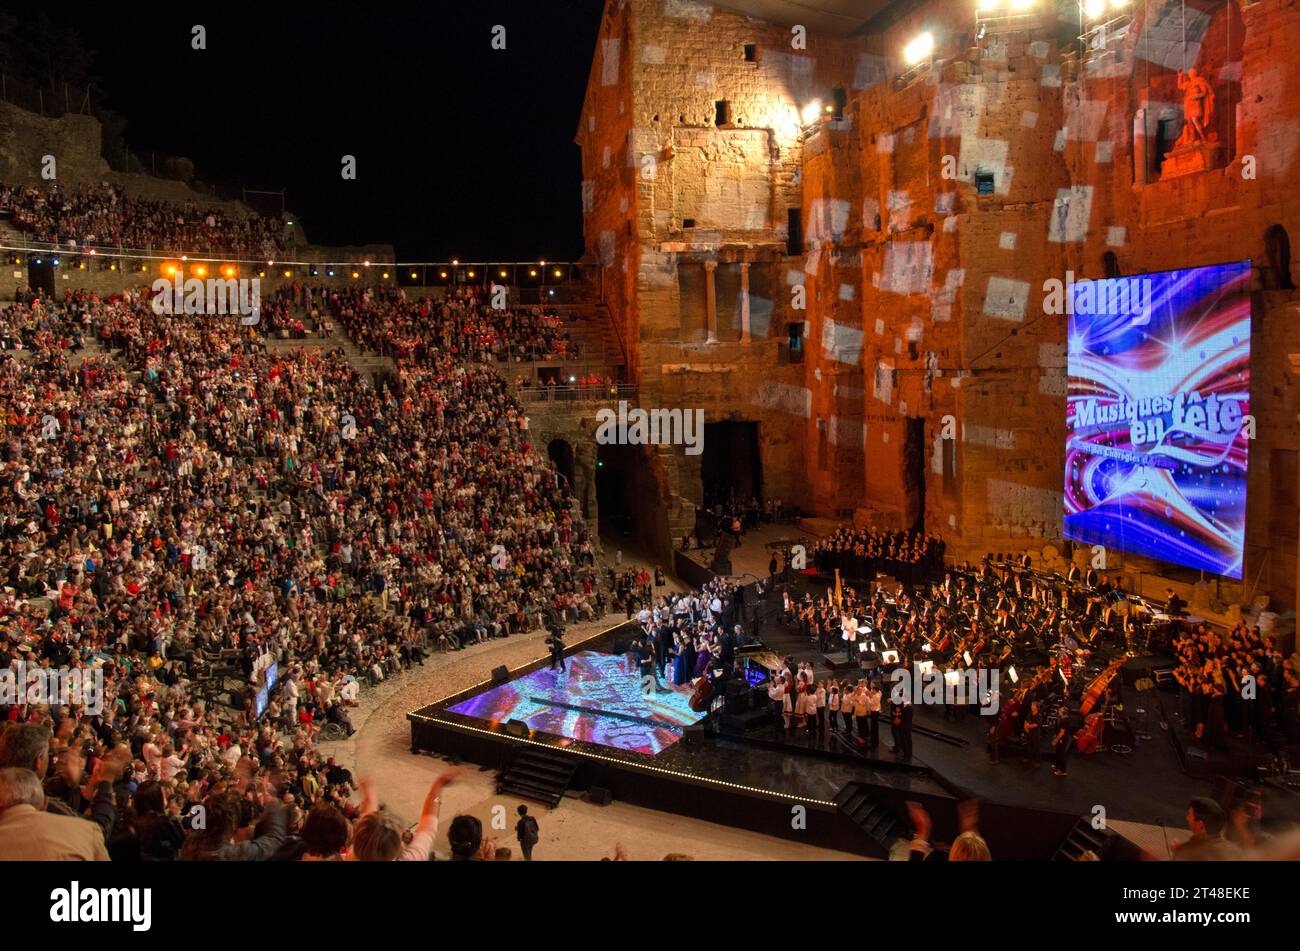 Public et interprètes lors d'un concert gratuit à l'occasion de la Fête nationale de la musique dans l'amphithéâtre romain d'Orange, Vaucluse, France. Banque D'Images